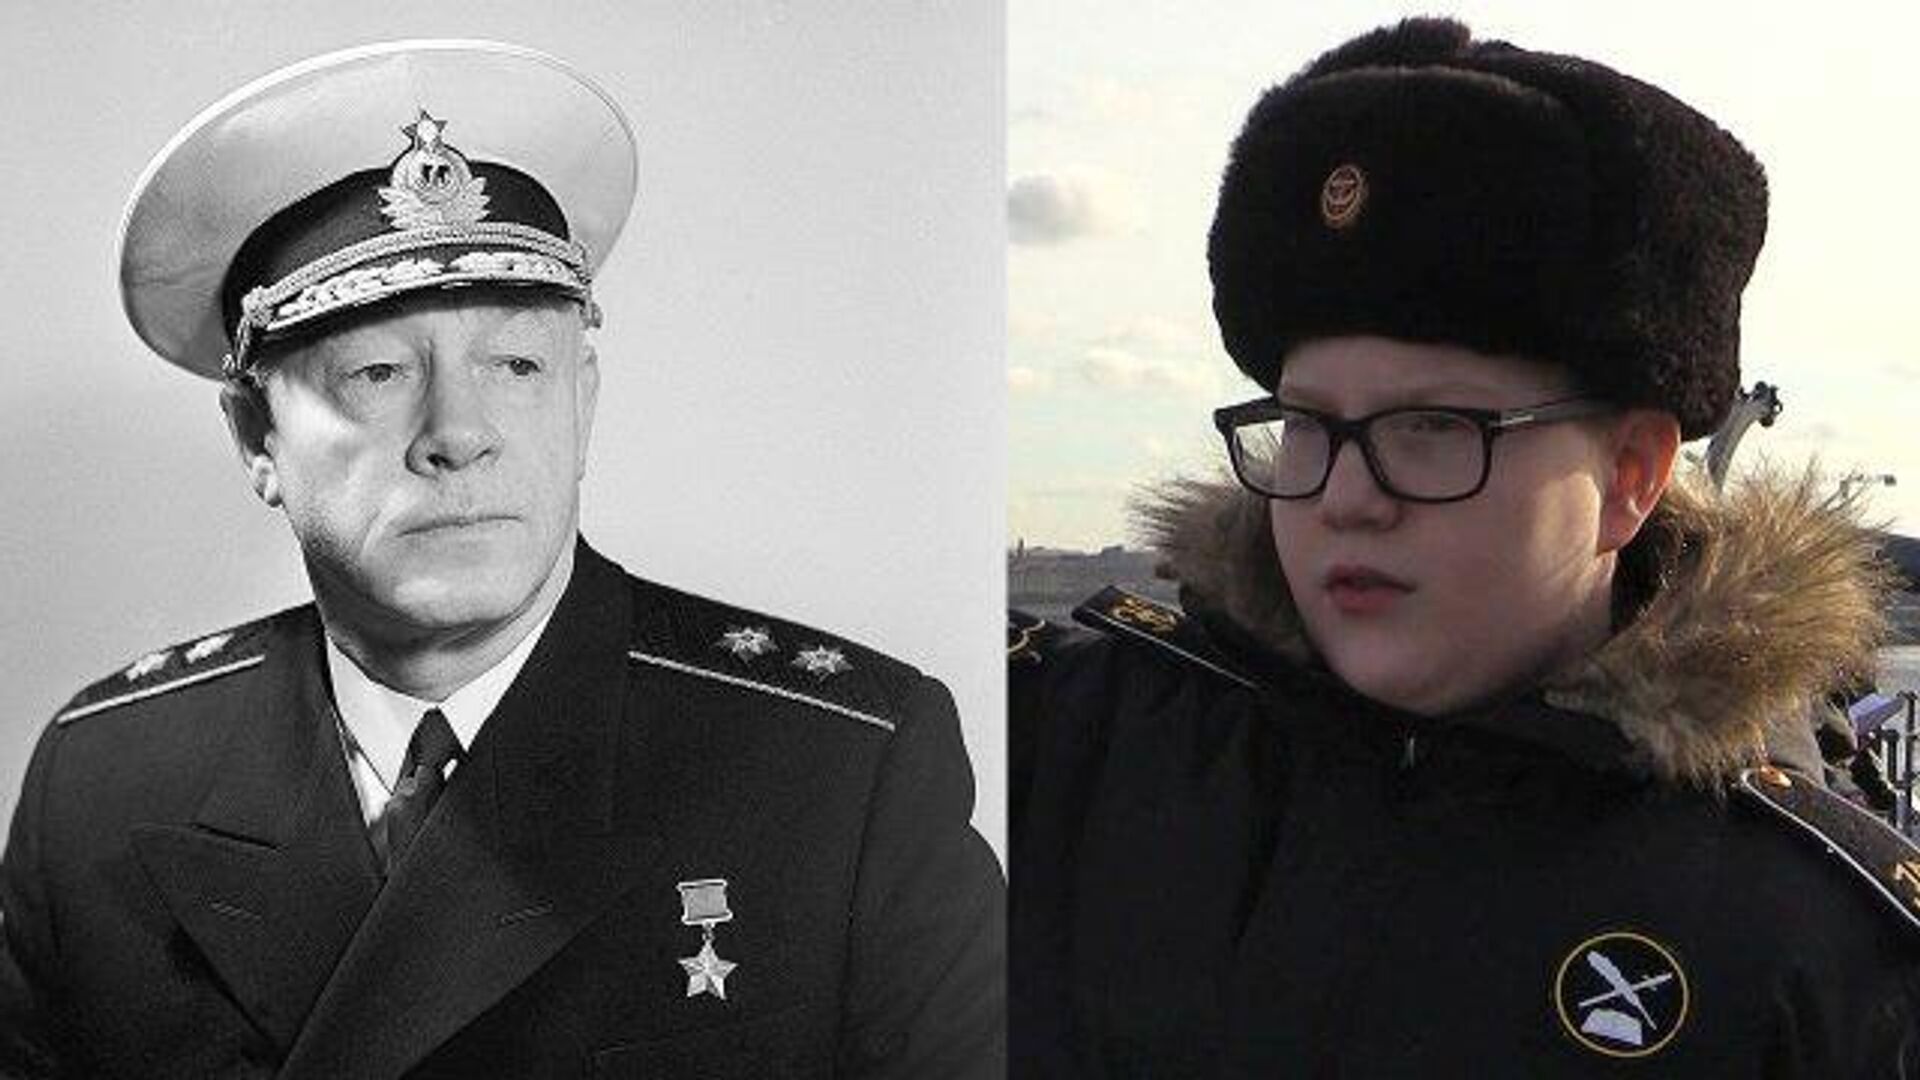 Адмирал кузнецов биография личная жизнь жены дети. Адмирал Кузнецов в молодости.